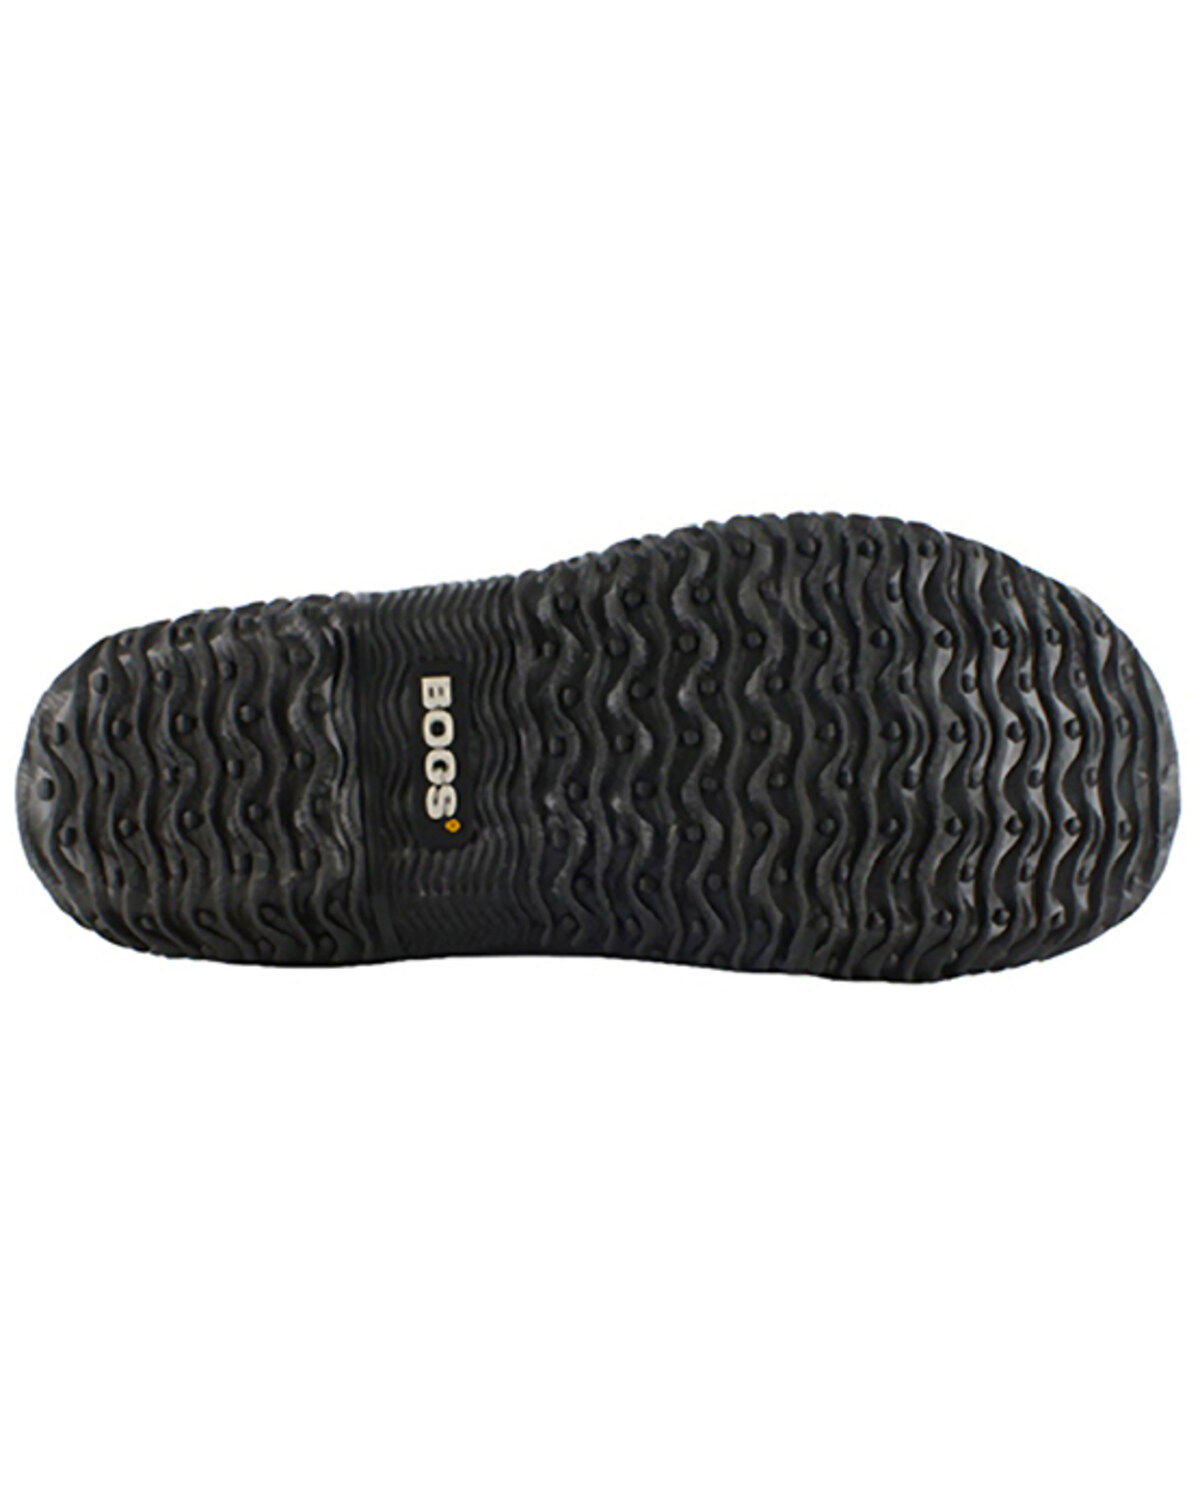 Bogs Men's Urban Walker Slip-On Shoes 